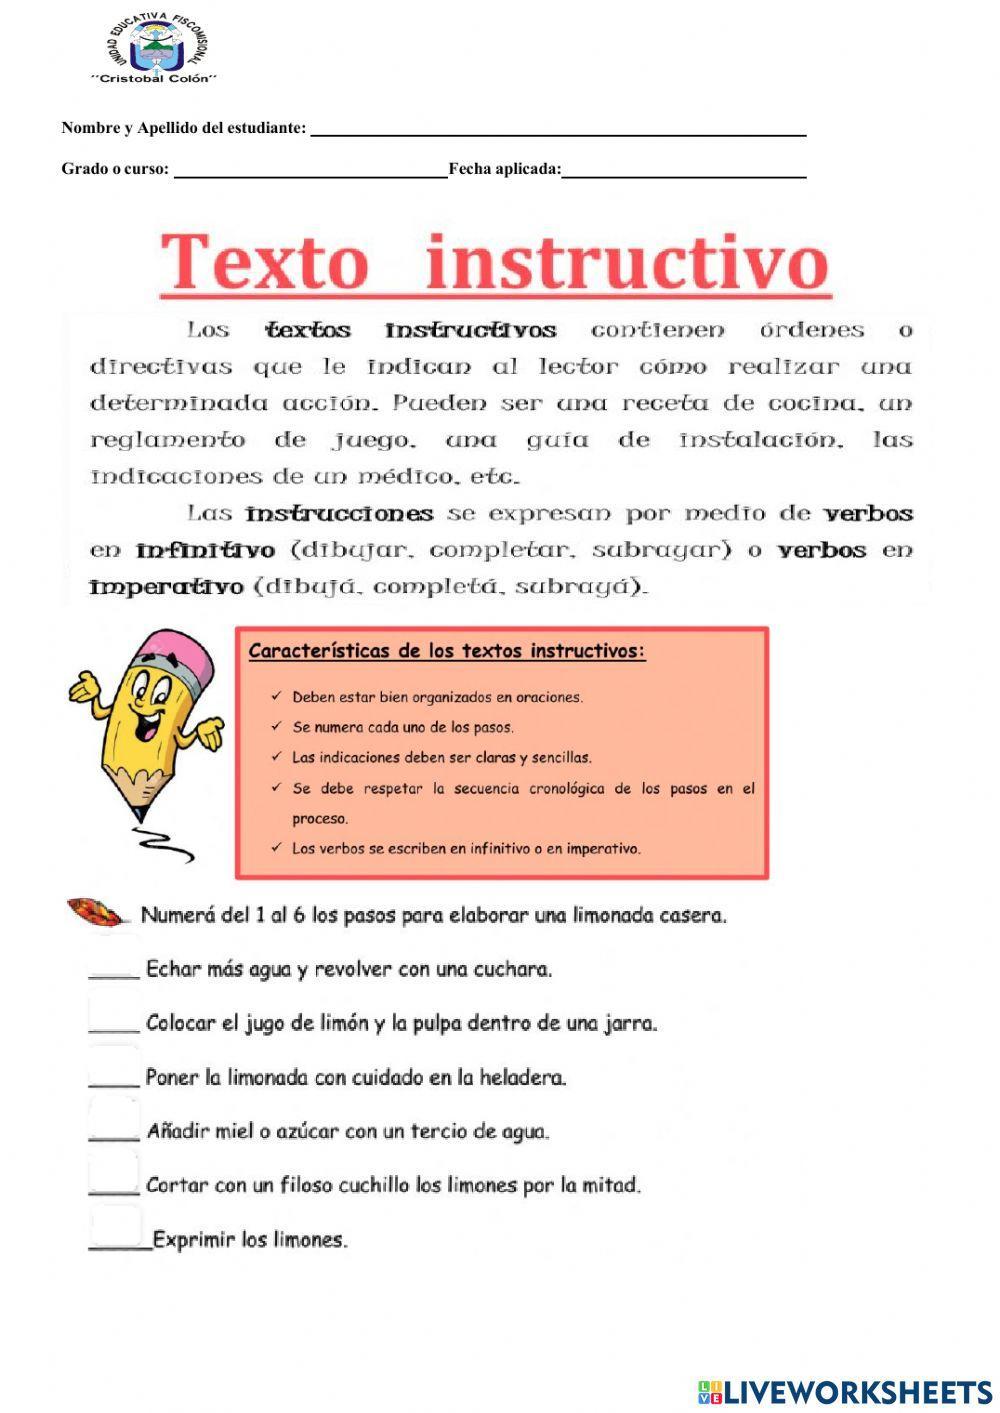 Caracteristicas del texto instructivo